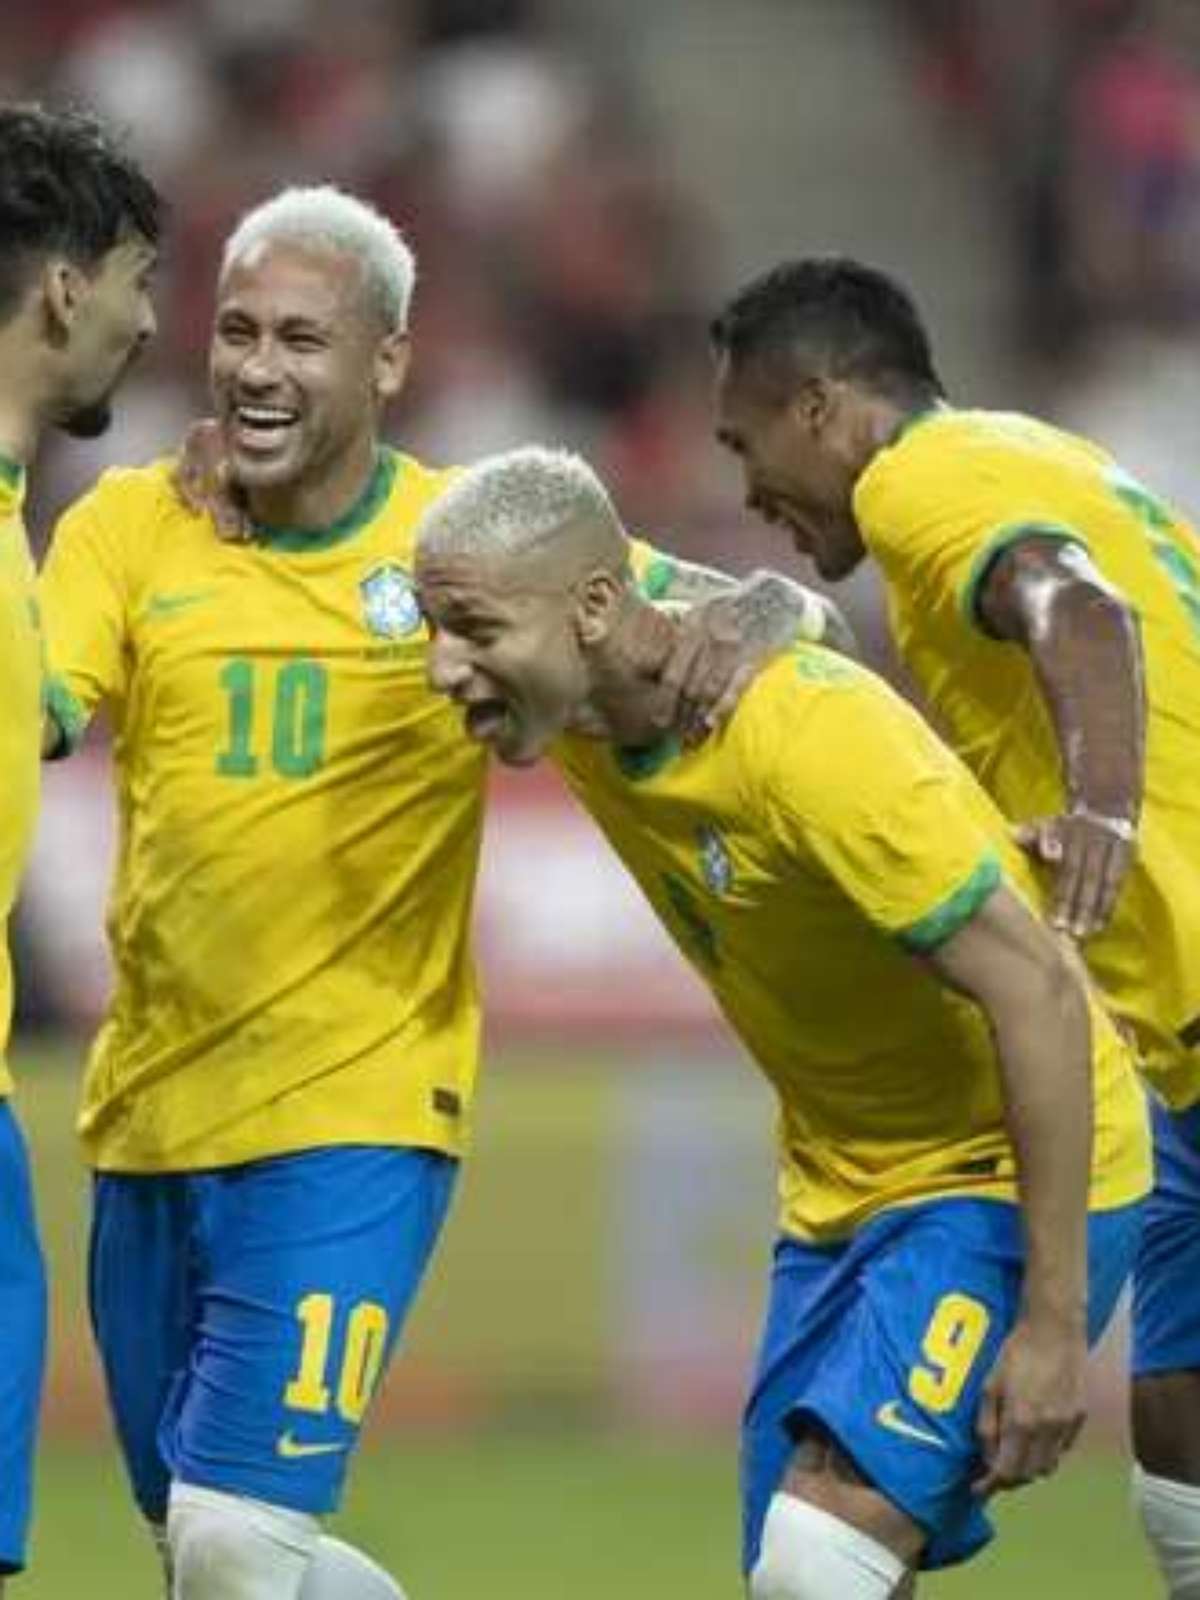 Brasil x Coreia do Sul  Onde assistir ao jogo das oitavas de final ao vivo  - Canaltech